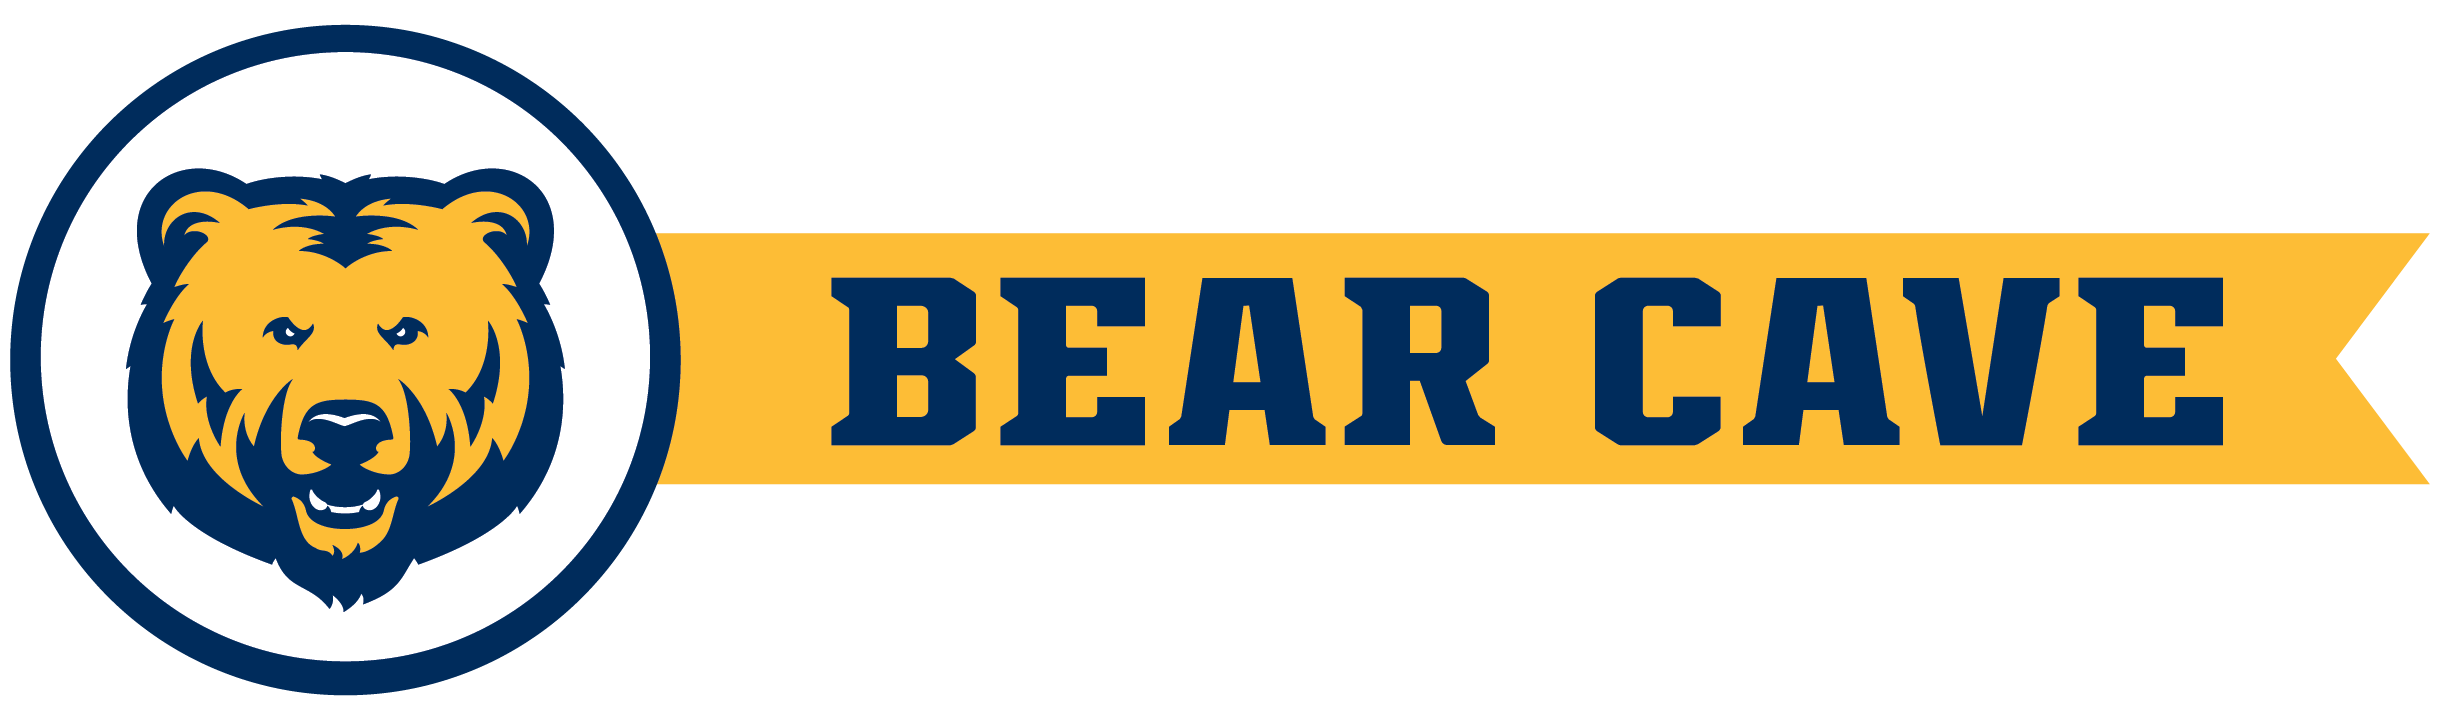 BearCave logo.